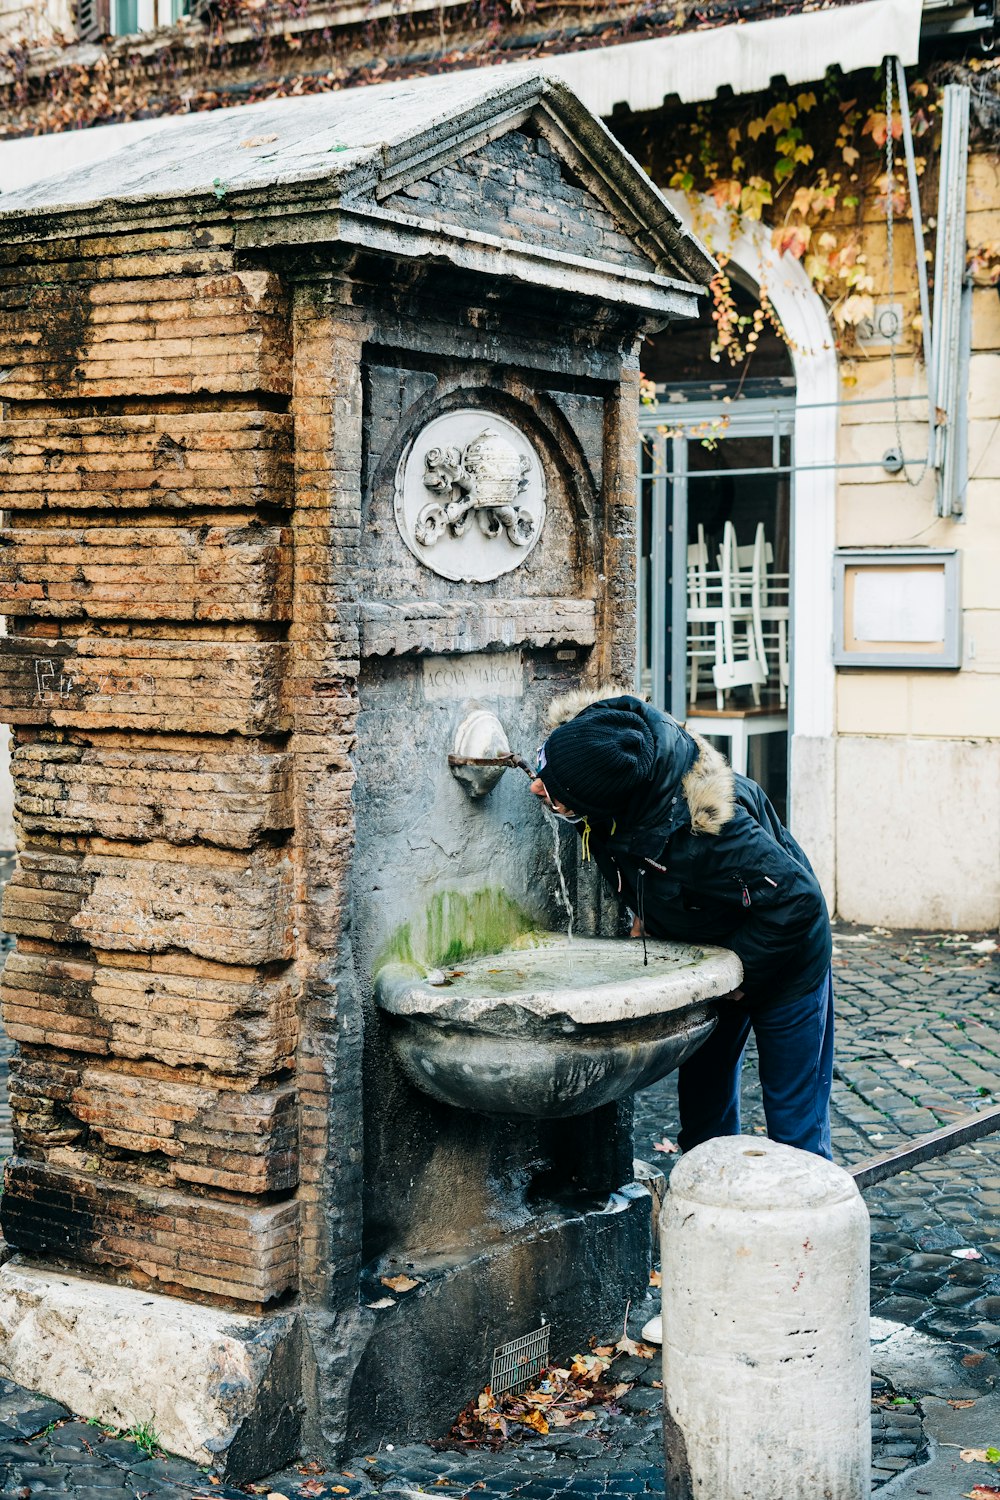 Mann in schwarzer Jacke gießt Wasser auf grauen Betonbrunnen